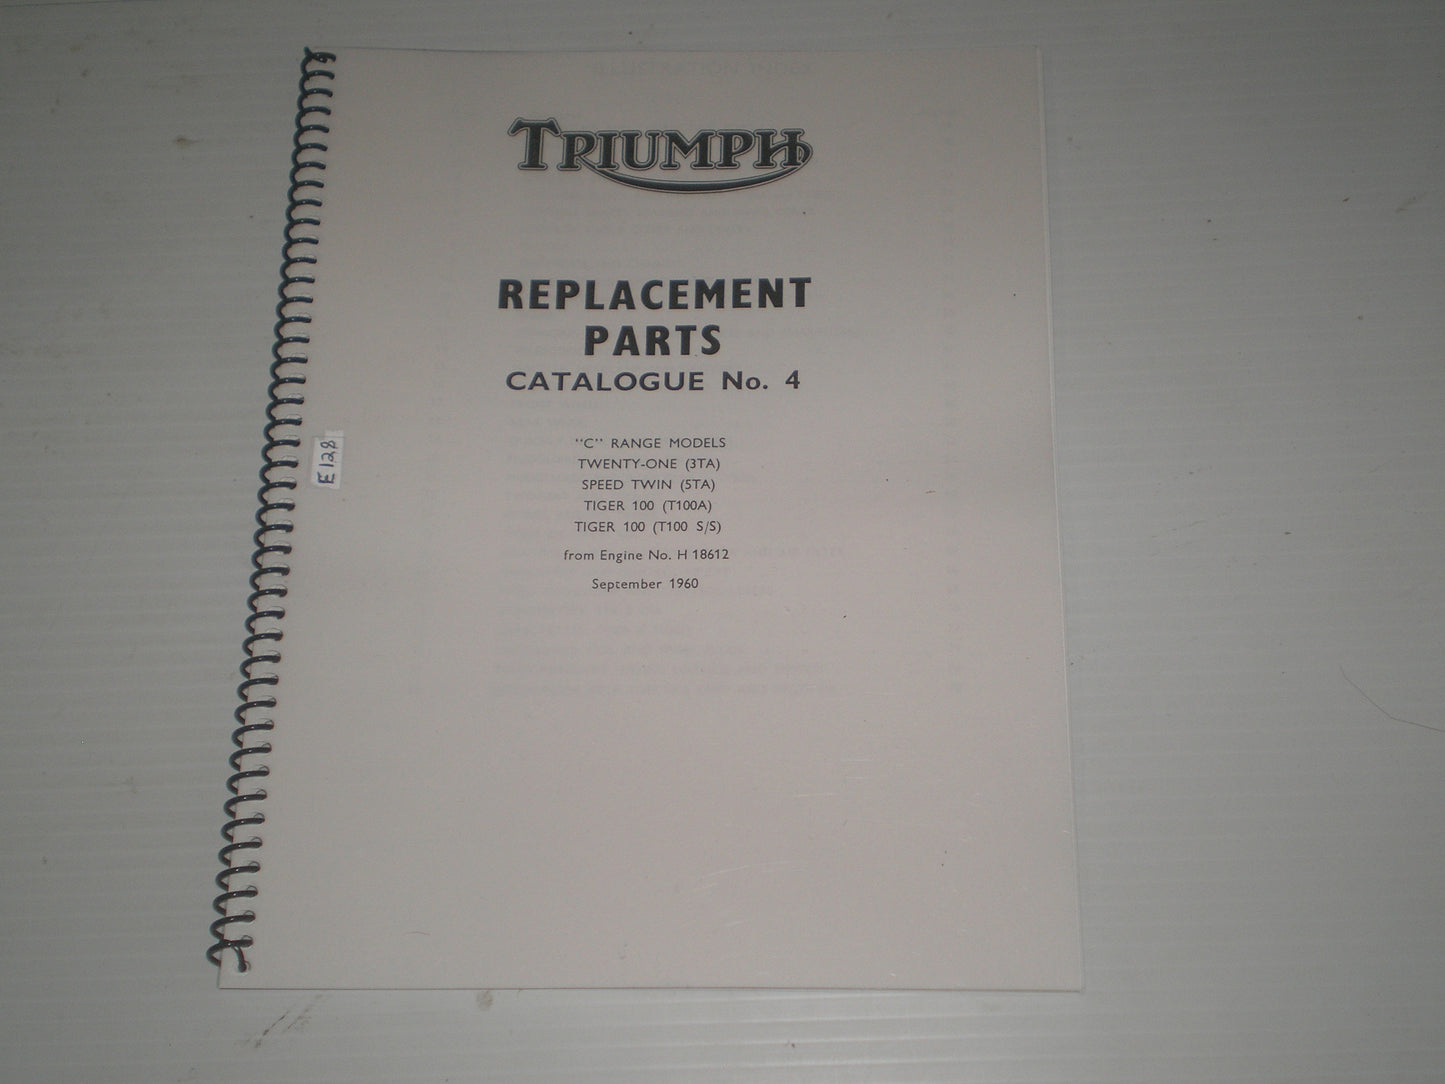 TRIUMPH 3TA  5TA  T100 A-S/S  "C" Range Models 1961  Parts Catalogue No. 4  #E128